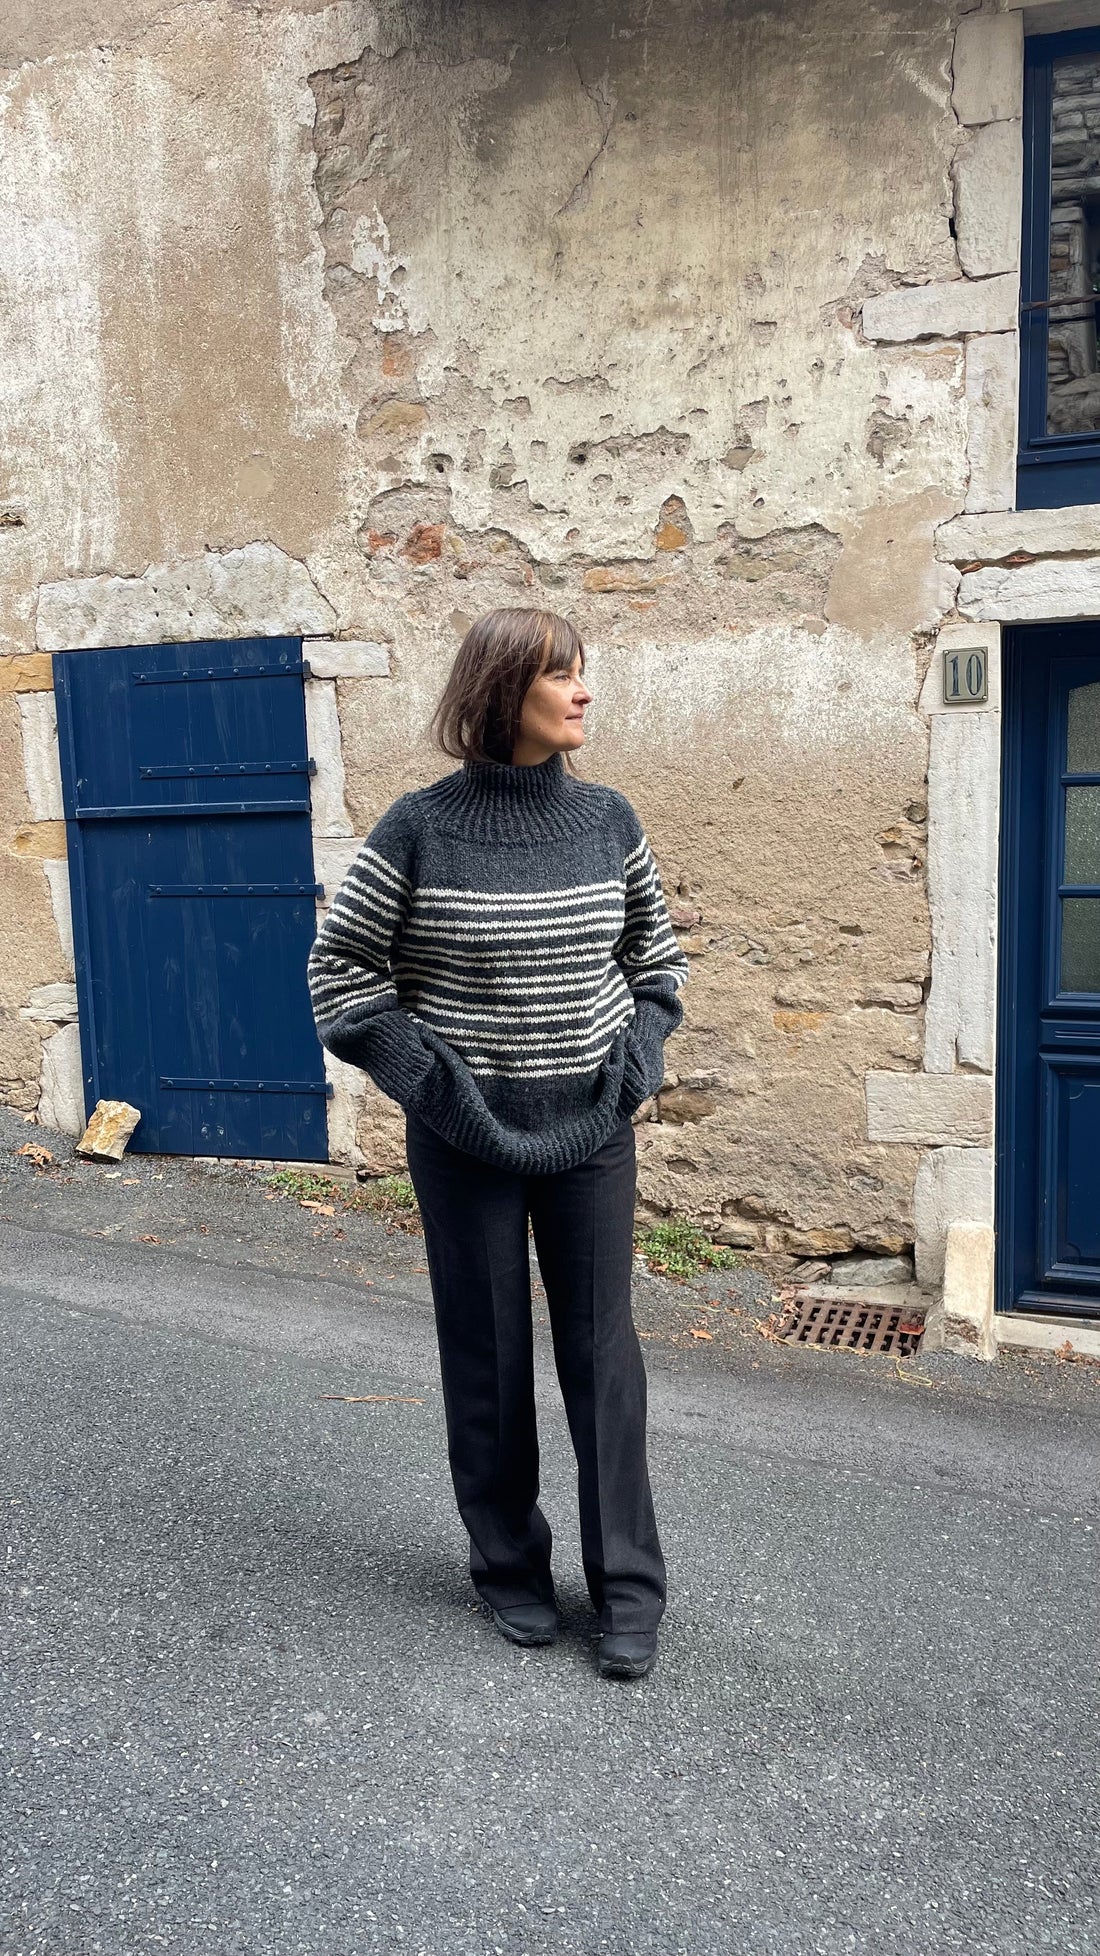 The Copenhagen Sweater - patron pdf en français